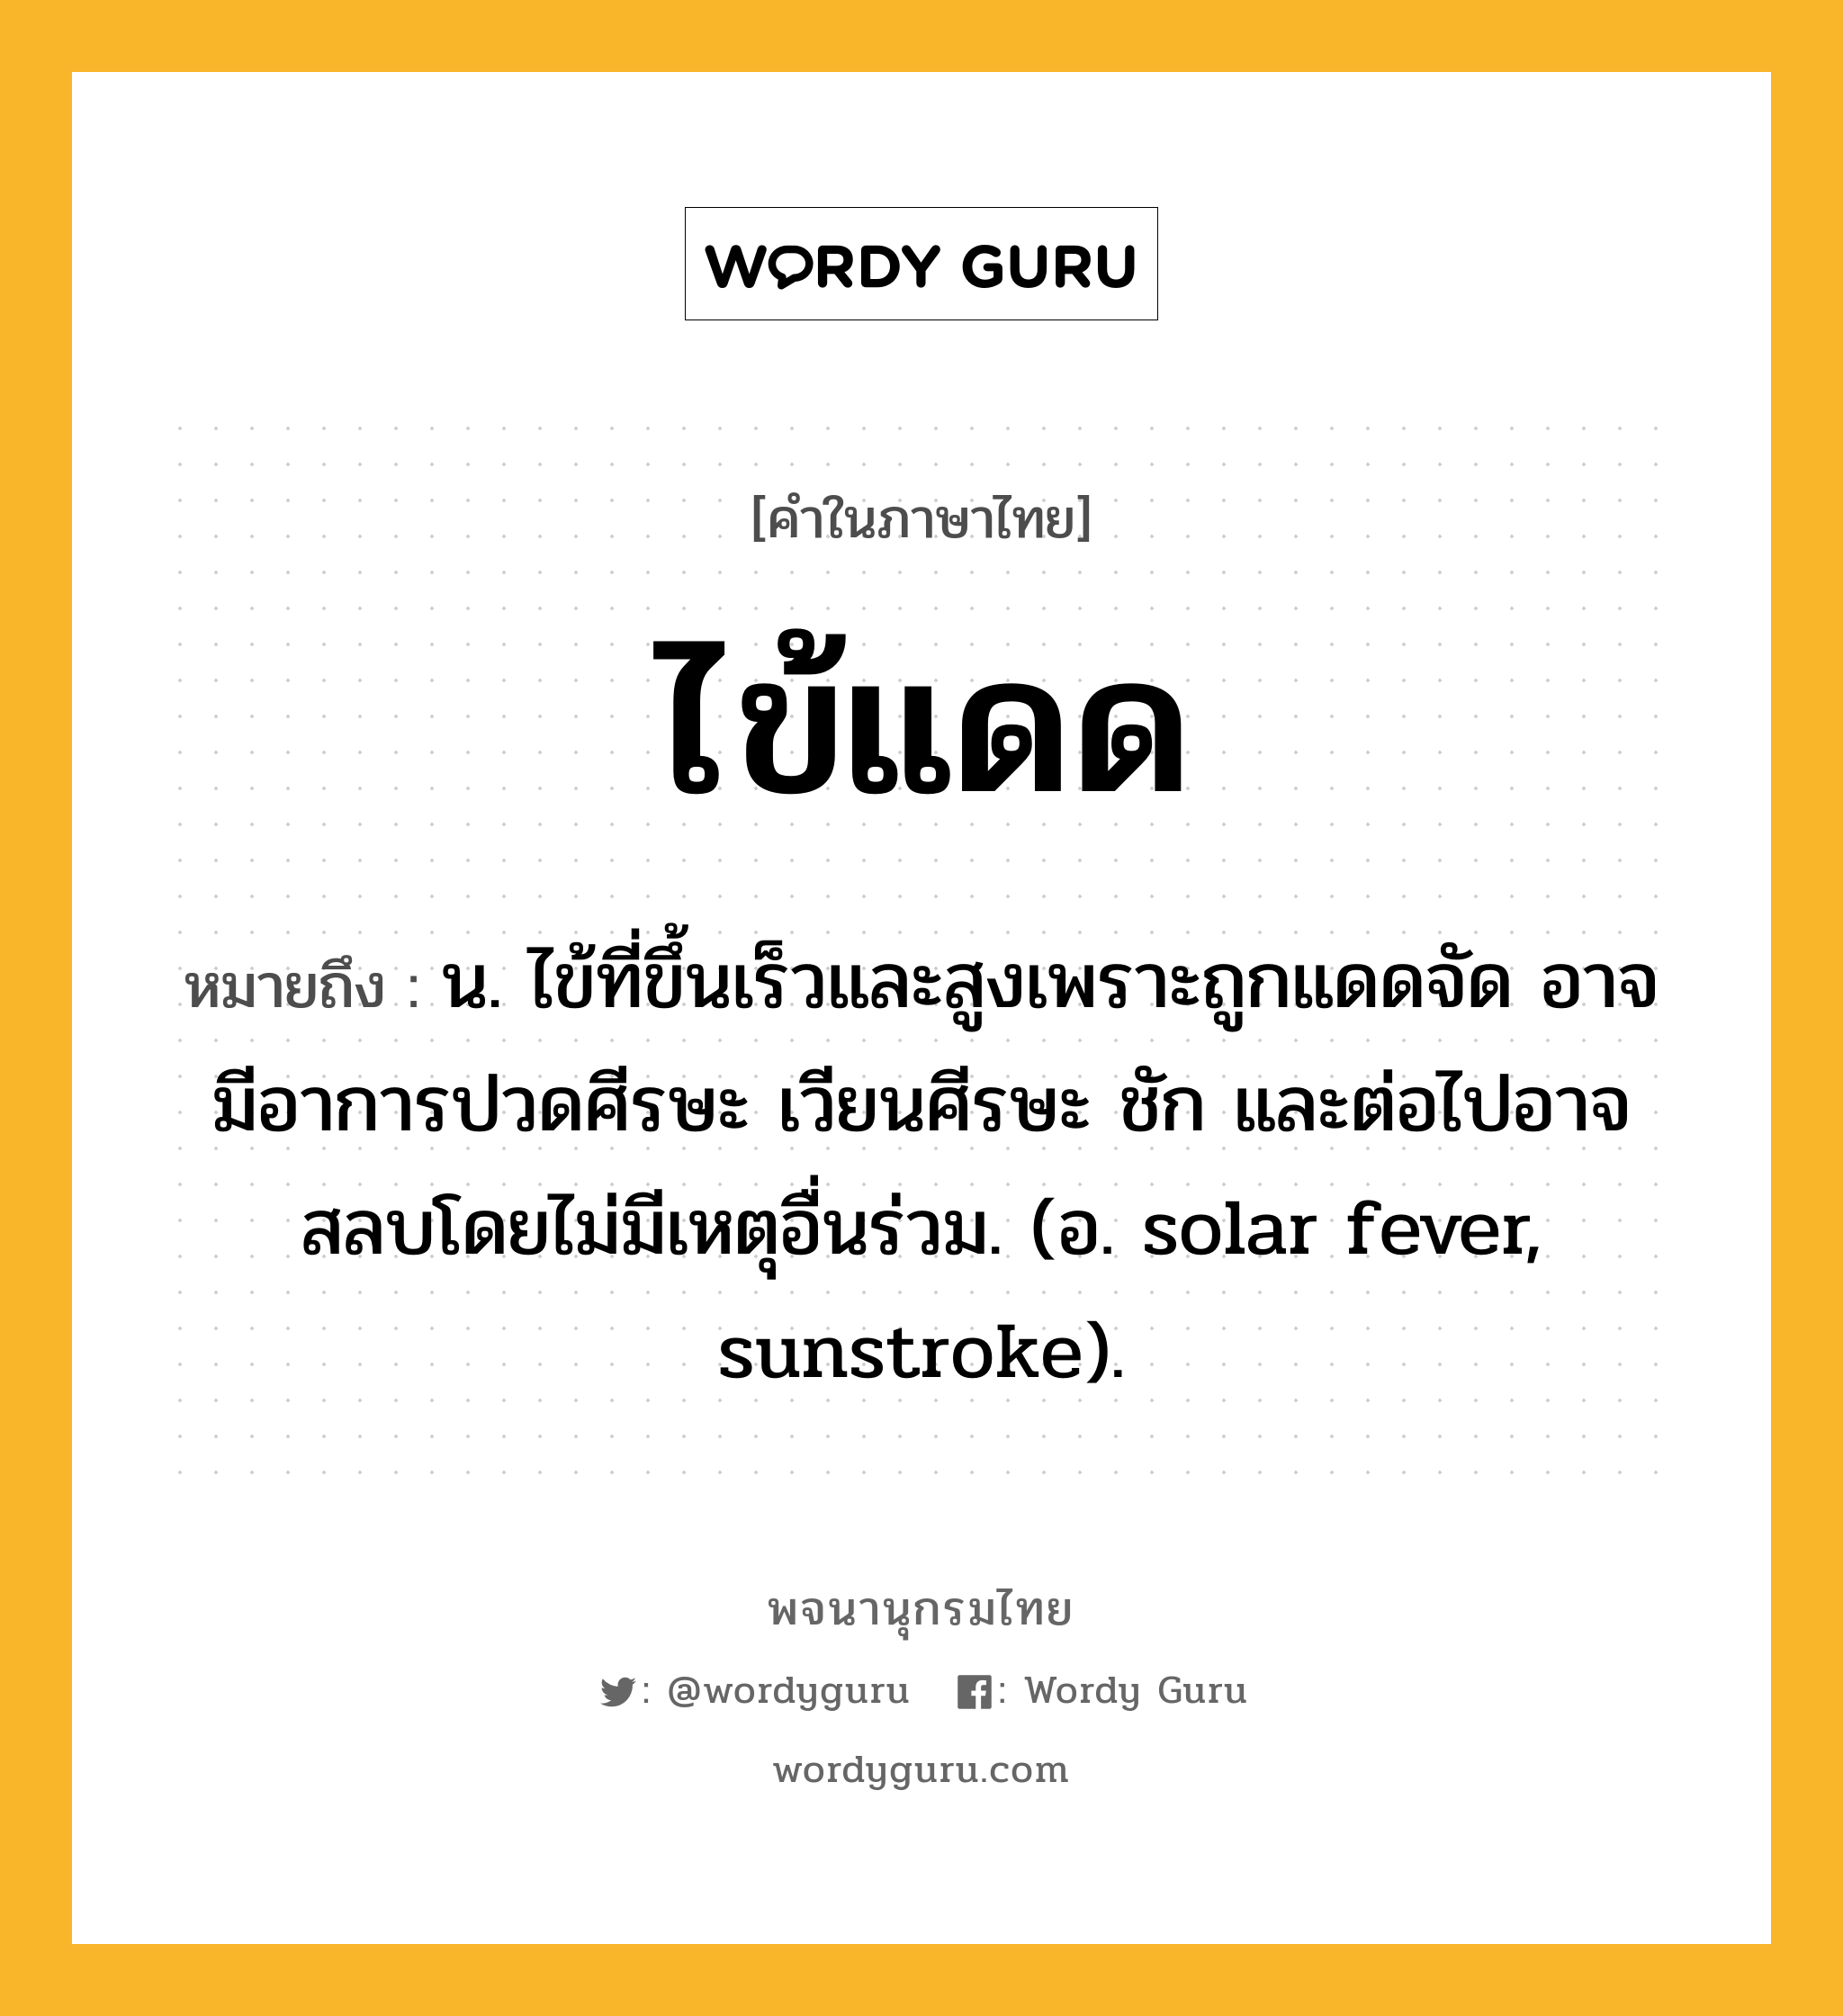 ไข้แดด หมายถึงอะไร?, คำในภาษาไทย ไข้แดด หมายถึง น. ไข้ที่ขึ้นเร็วและสูงเพราะถูกแดดจัด อาจมีอาการปวดศีรษะ เวียนศีรษะ ชัก และต่อไปอาจสลบโดยไม่มีเหตุอื่นร่วม. (อ. solar fever, sunstroke).